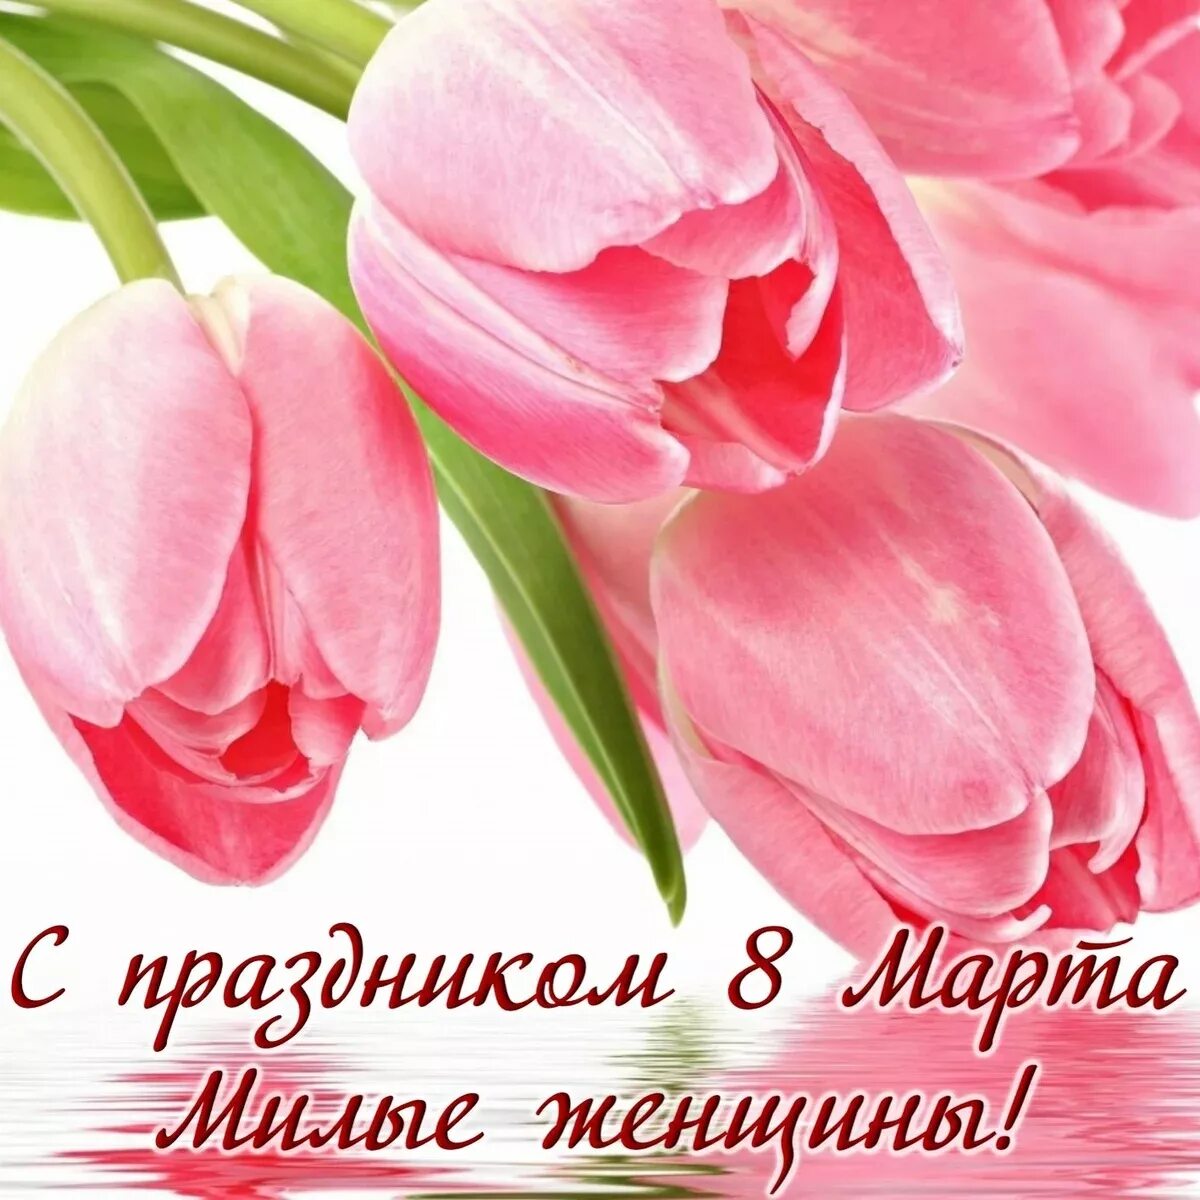 С 8 мартом будь всегда самой счастливой. Поздравляем с праздником тюльпаны.